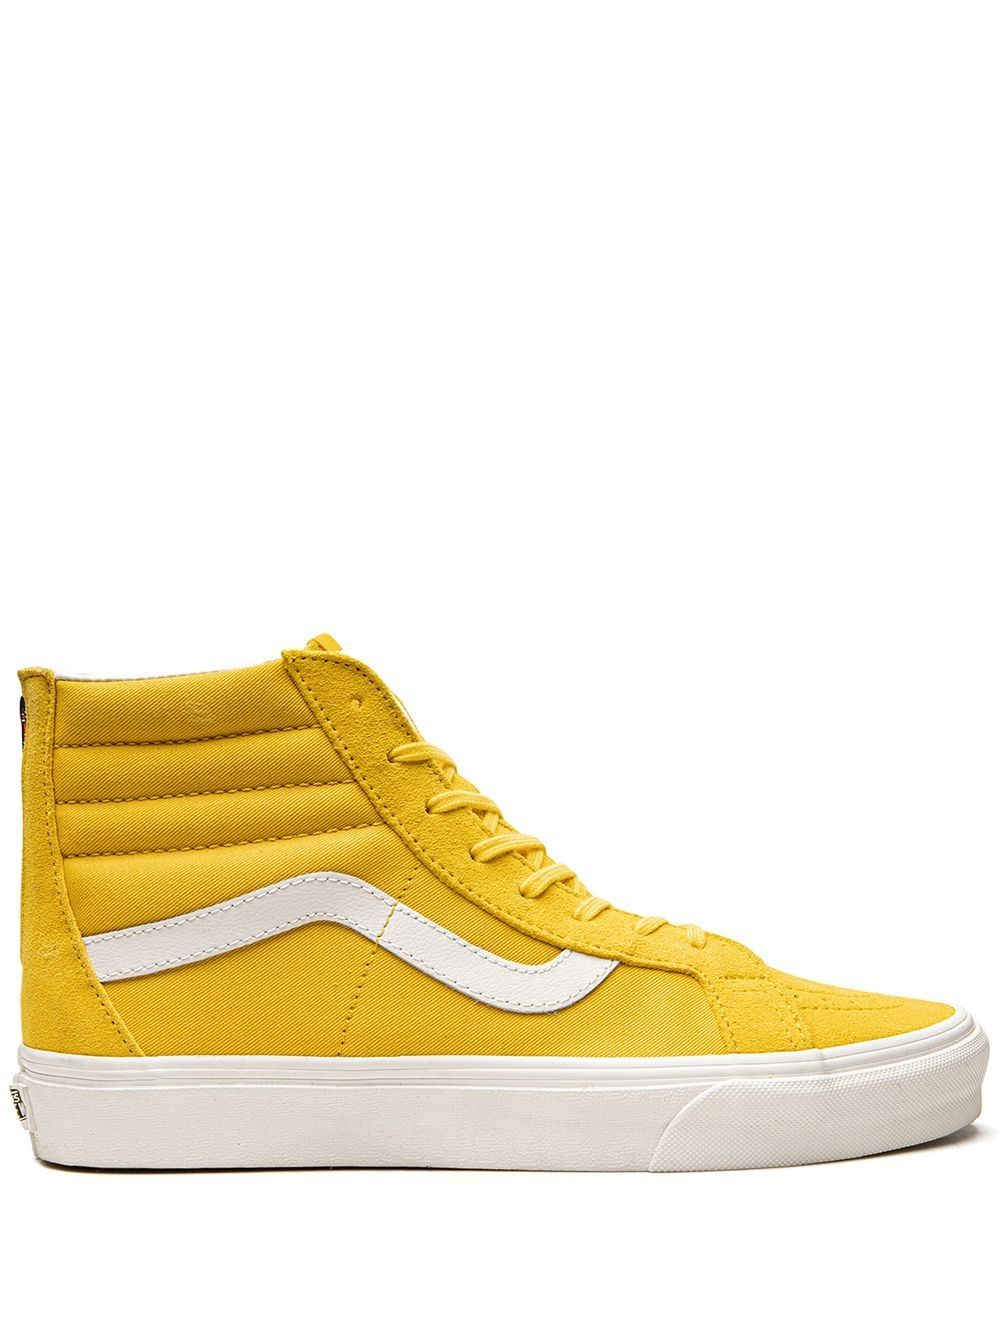 Vans Sk8-hi Reissue Sneakers In Yellow